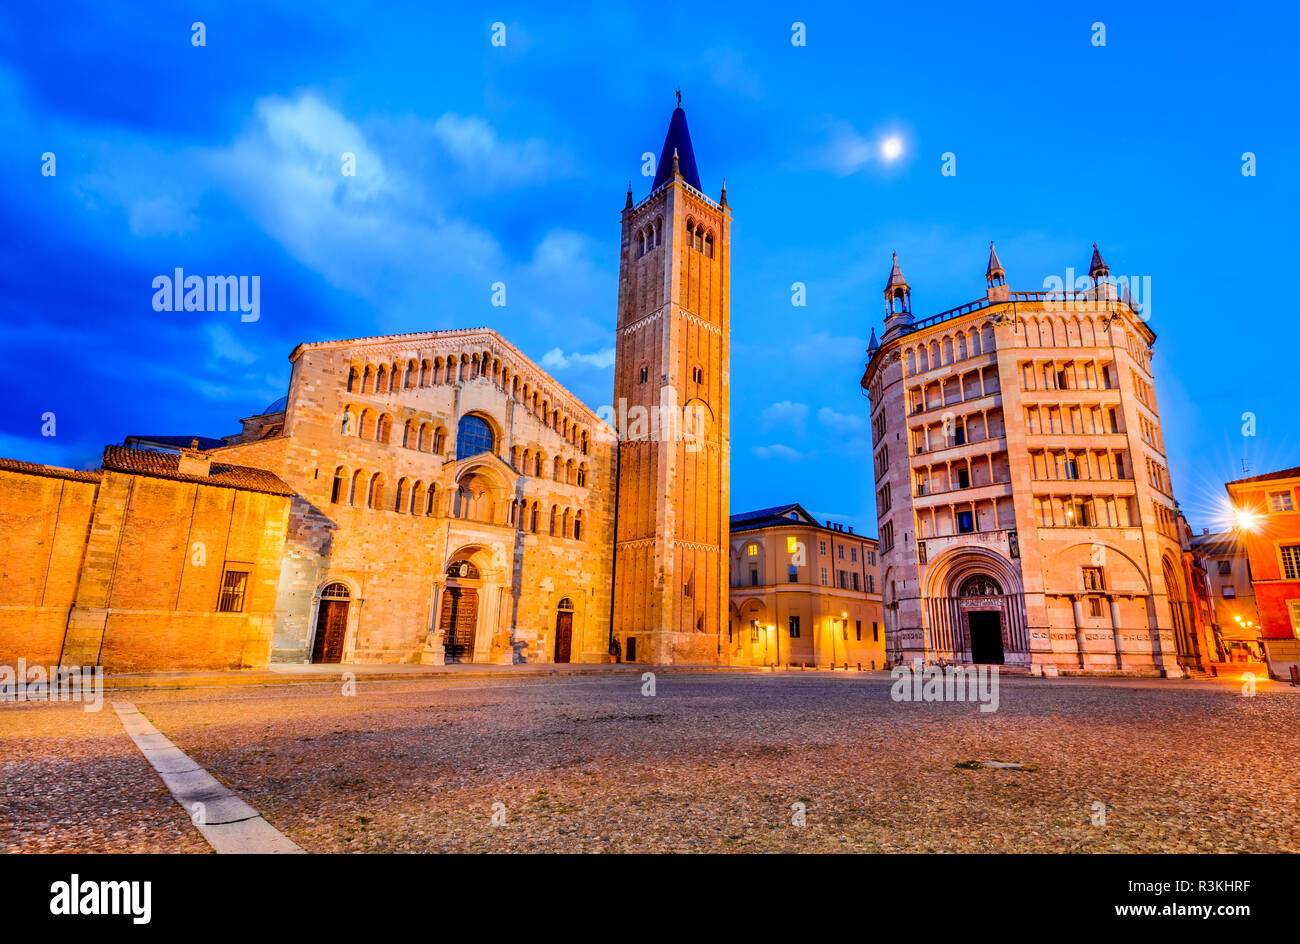 Parma, Italien - Piazza del Duomo mit dem Dom im Jahr 1059, Emilia-Romagna erbaut. Stockfoto